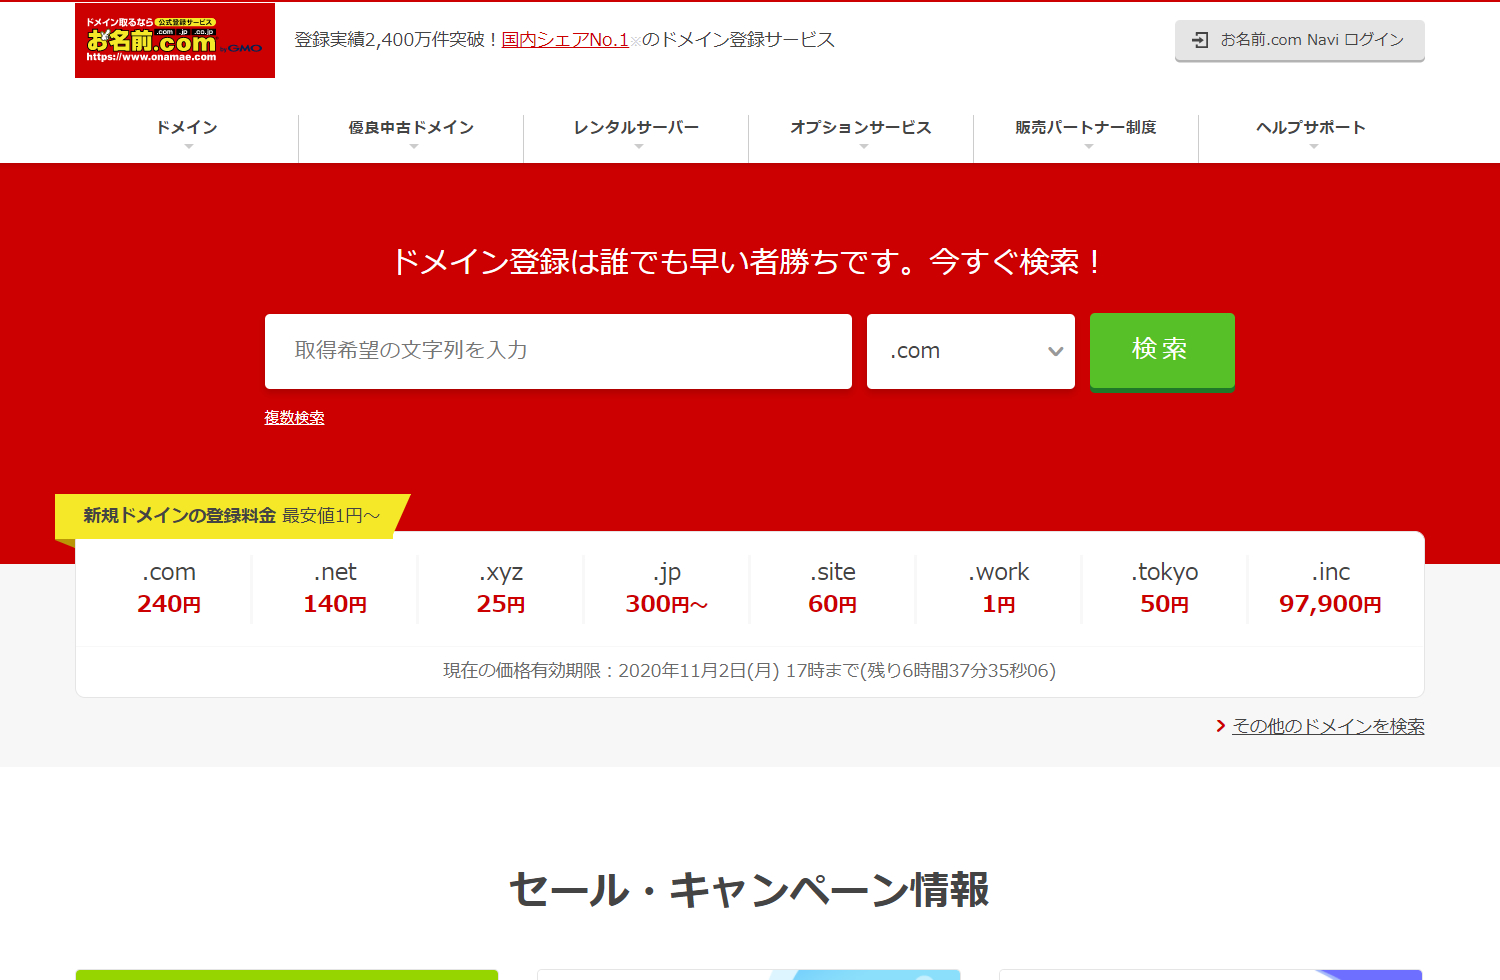 NaoYama Blogがおすすめするドメインサービス「お名前.com」